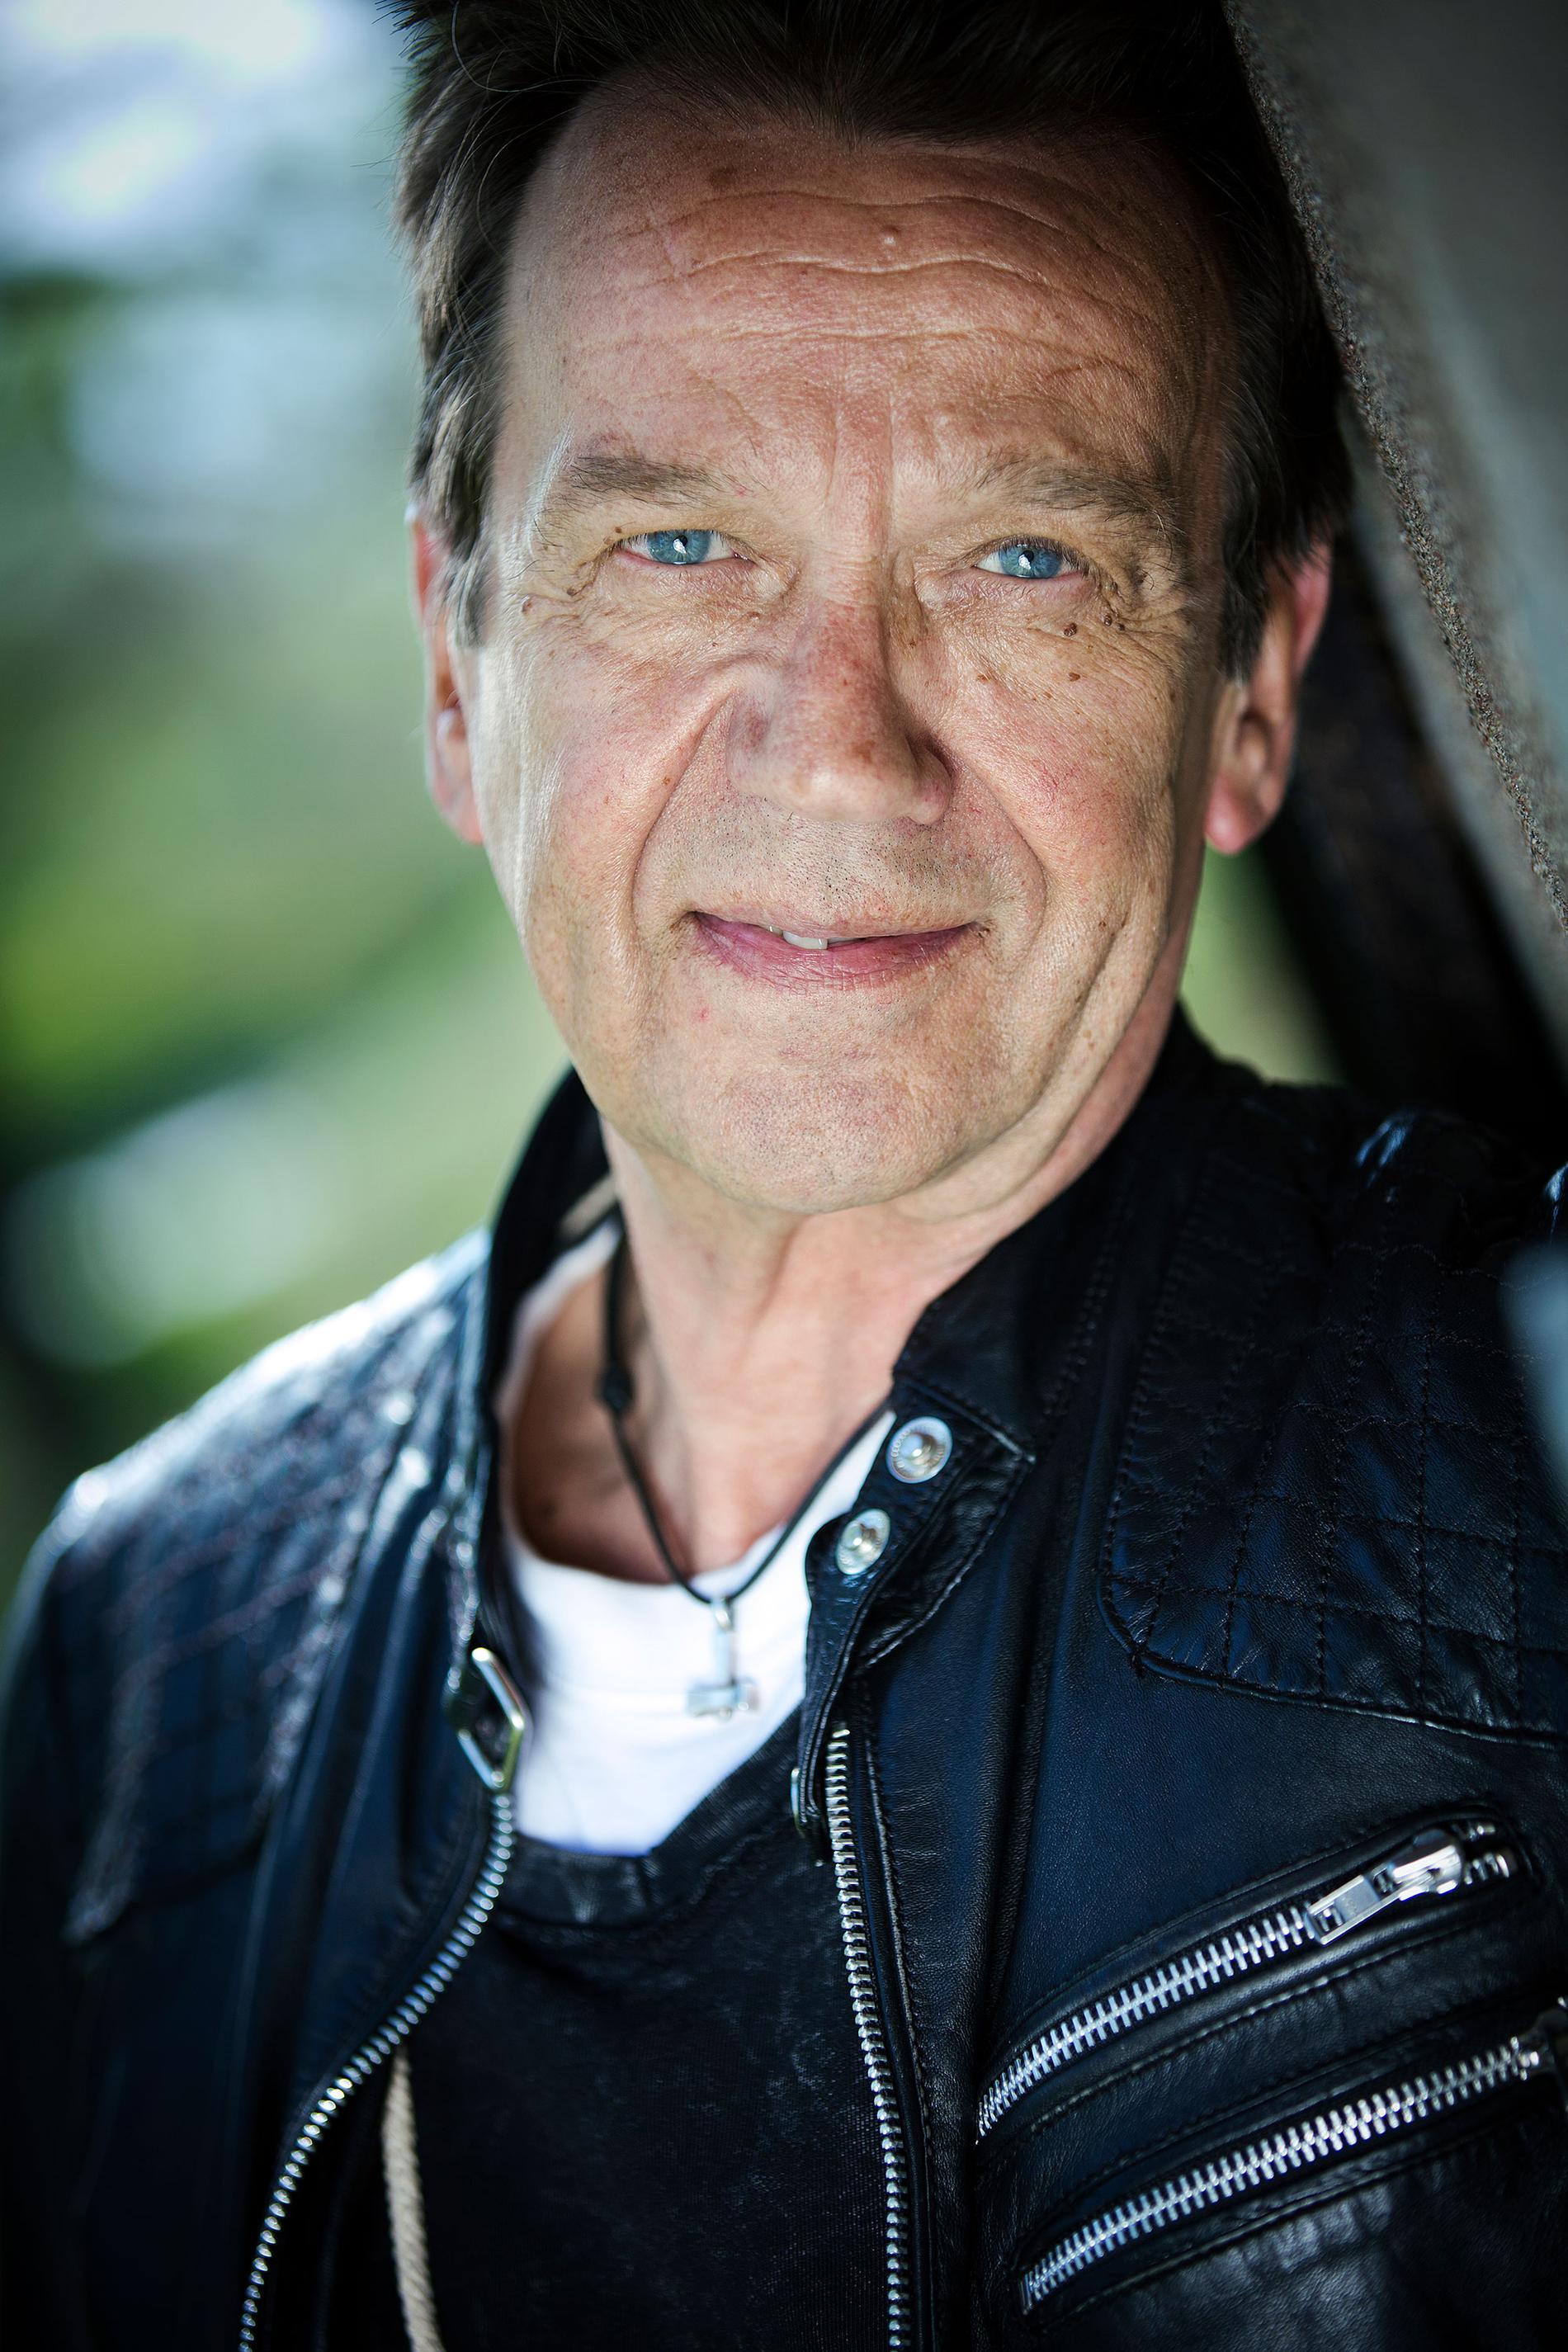 Björn Skifs jobbade med Åke Cato på 1980-talet främst i samband med ”Nöjesmassakern”: ”Det är med vemod, men ändå med glädje som jag minns Åke”